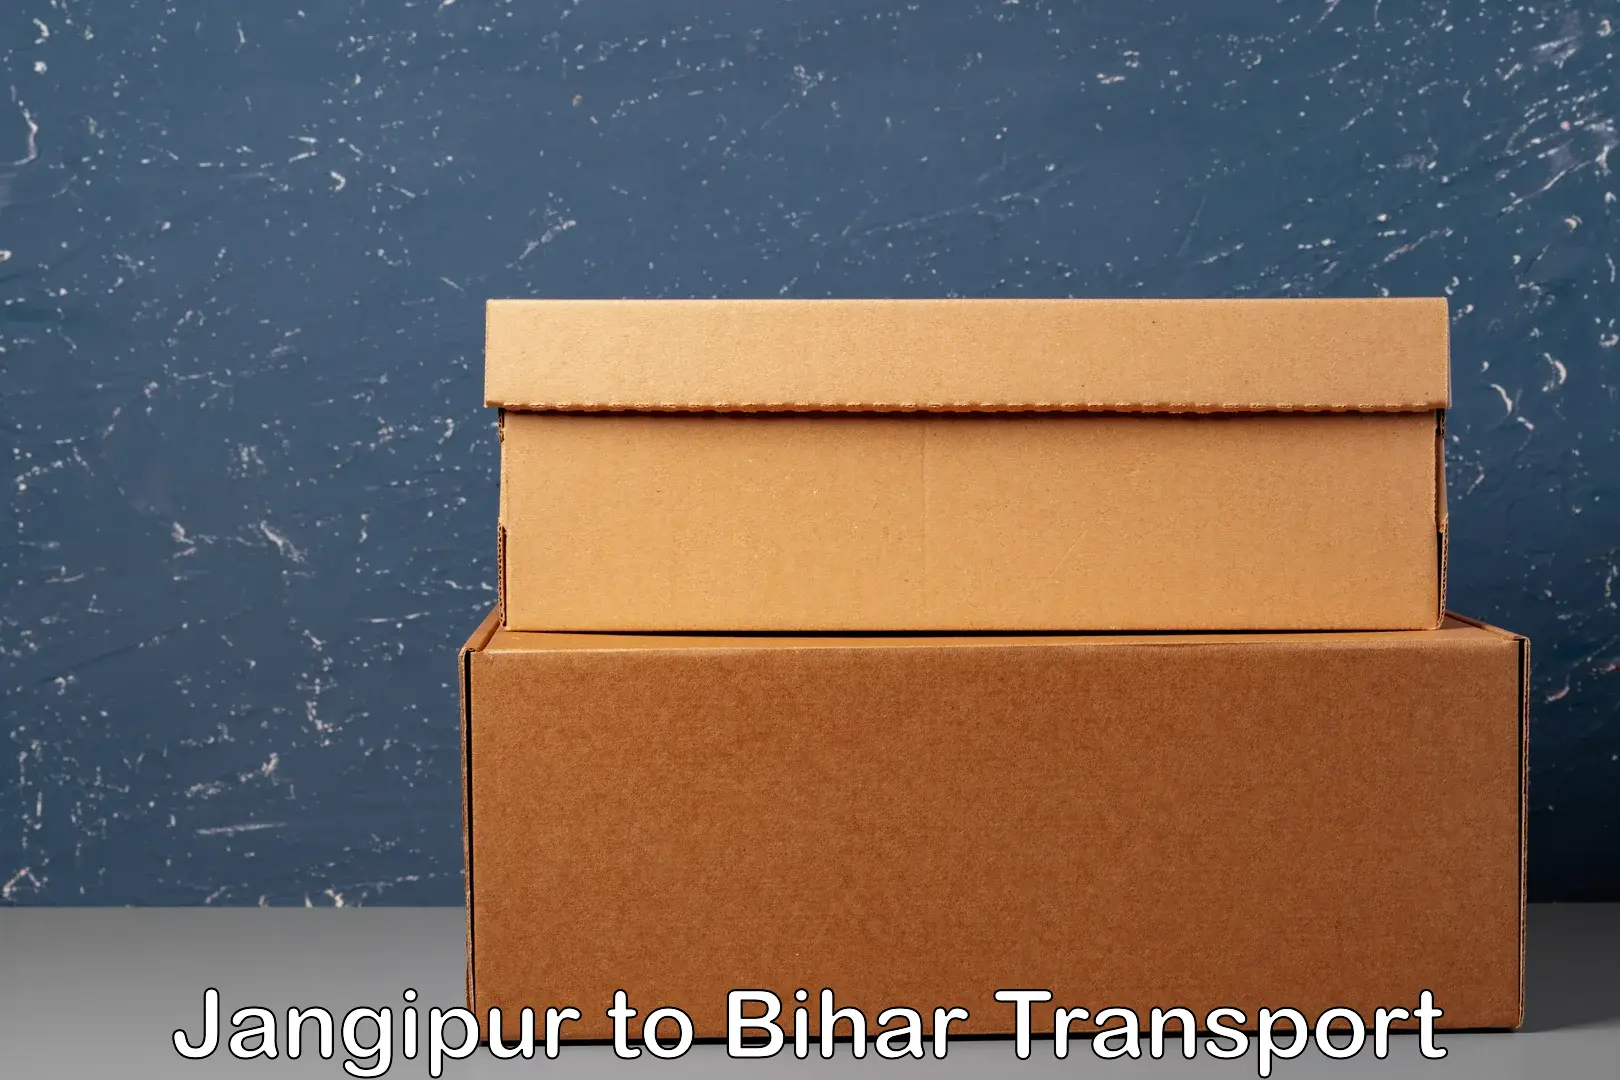 Online transport booking Jangipur to Mahaddipur